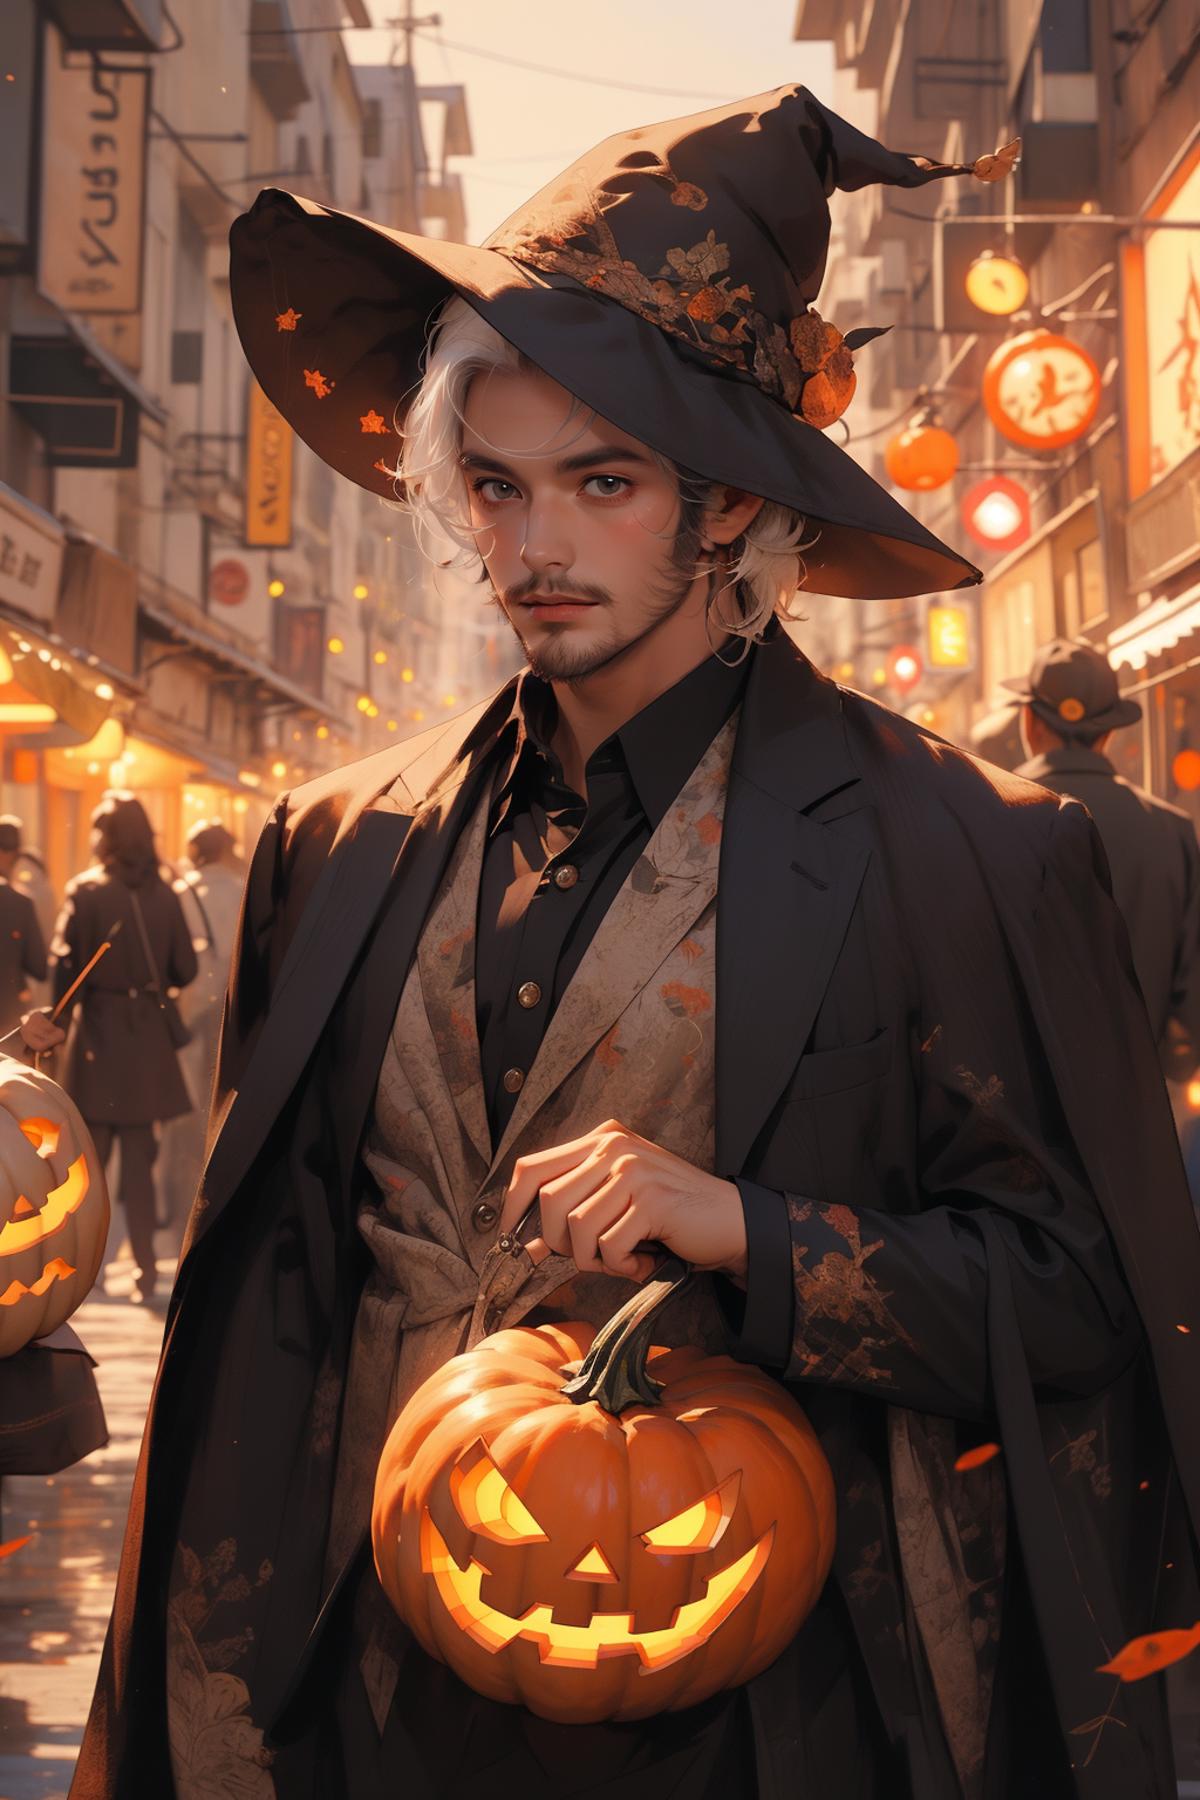 万圣节Halloween, Pumpkin, Witch Hat image by woshimadai